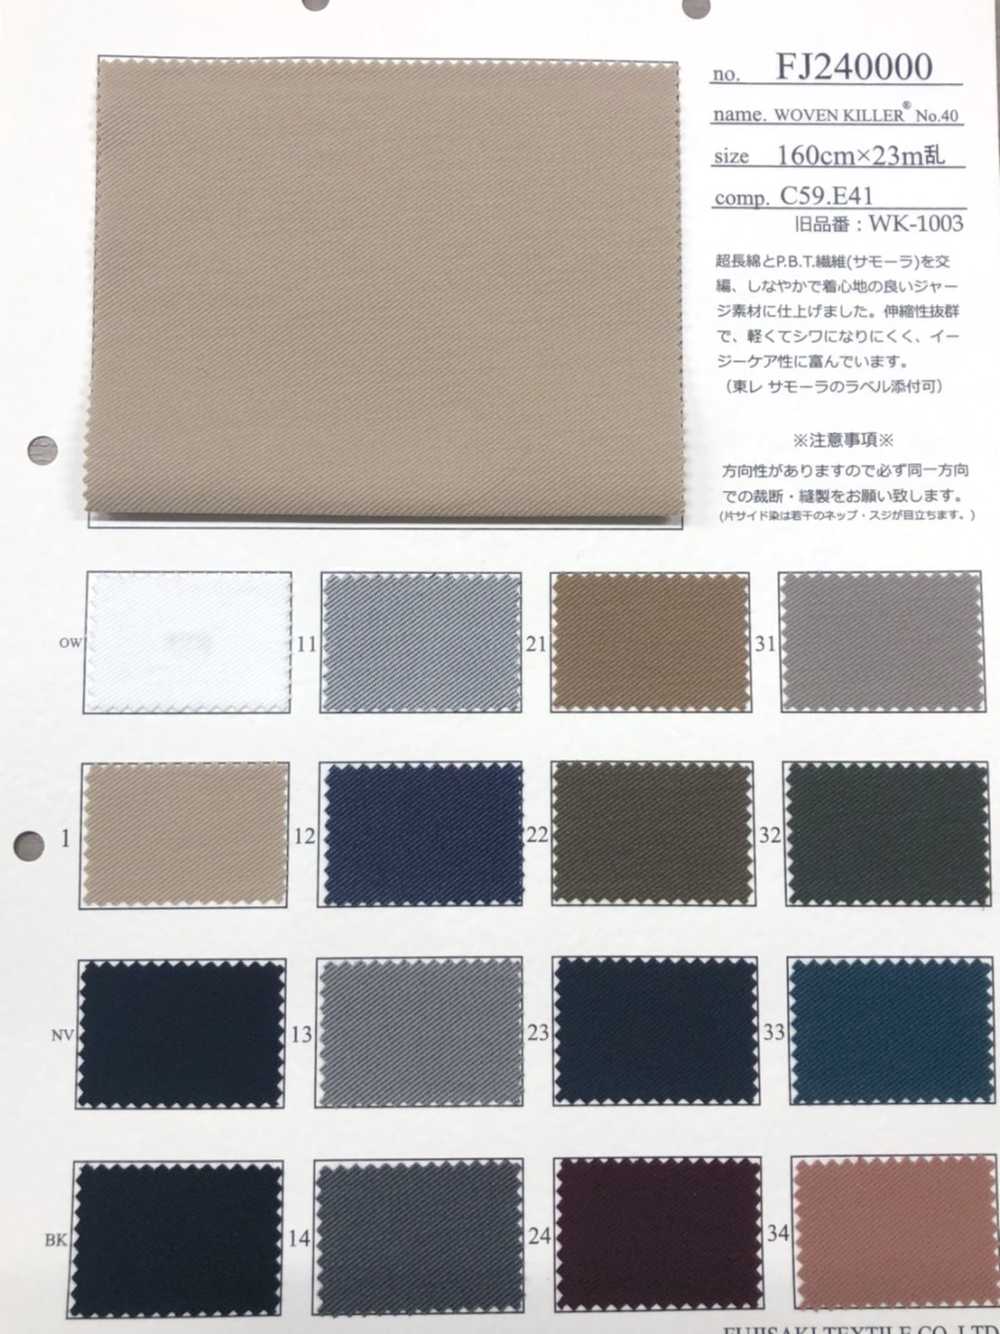 FJ240000 WOVEN 聚酯纖維 No.40平針織物平紋針織面料 Fujisaki Textile